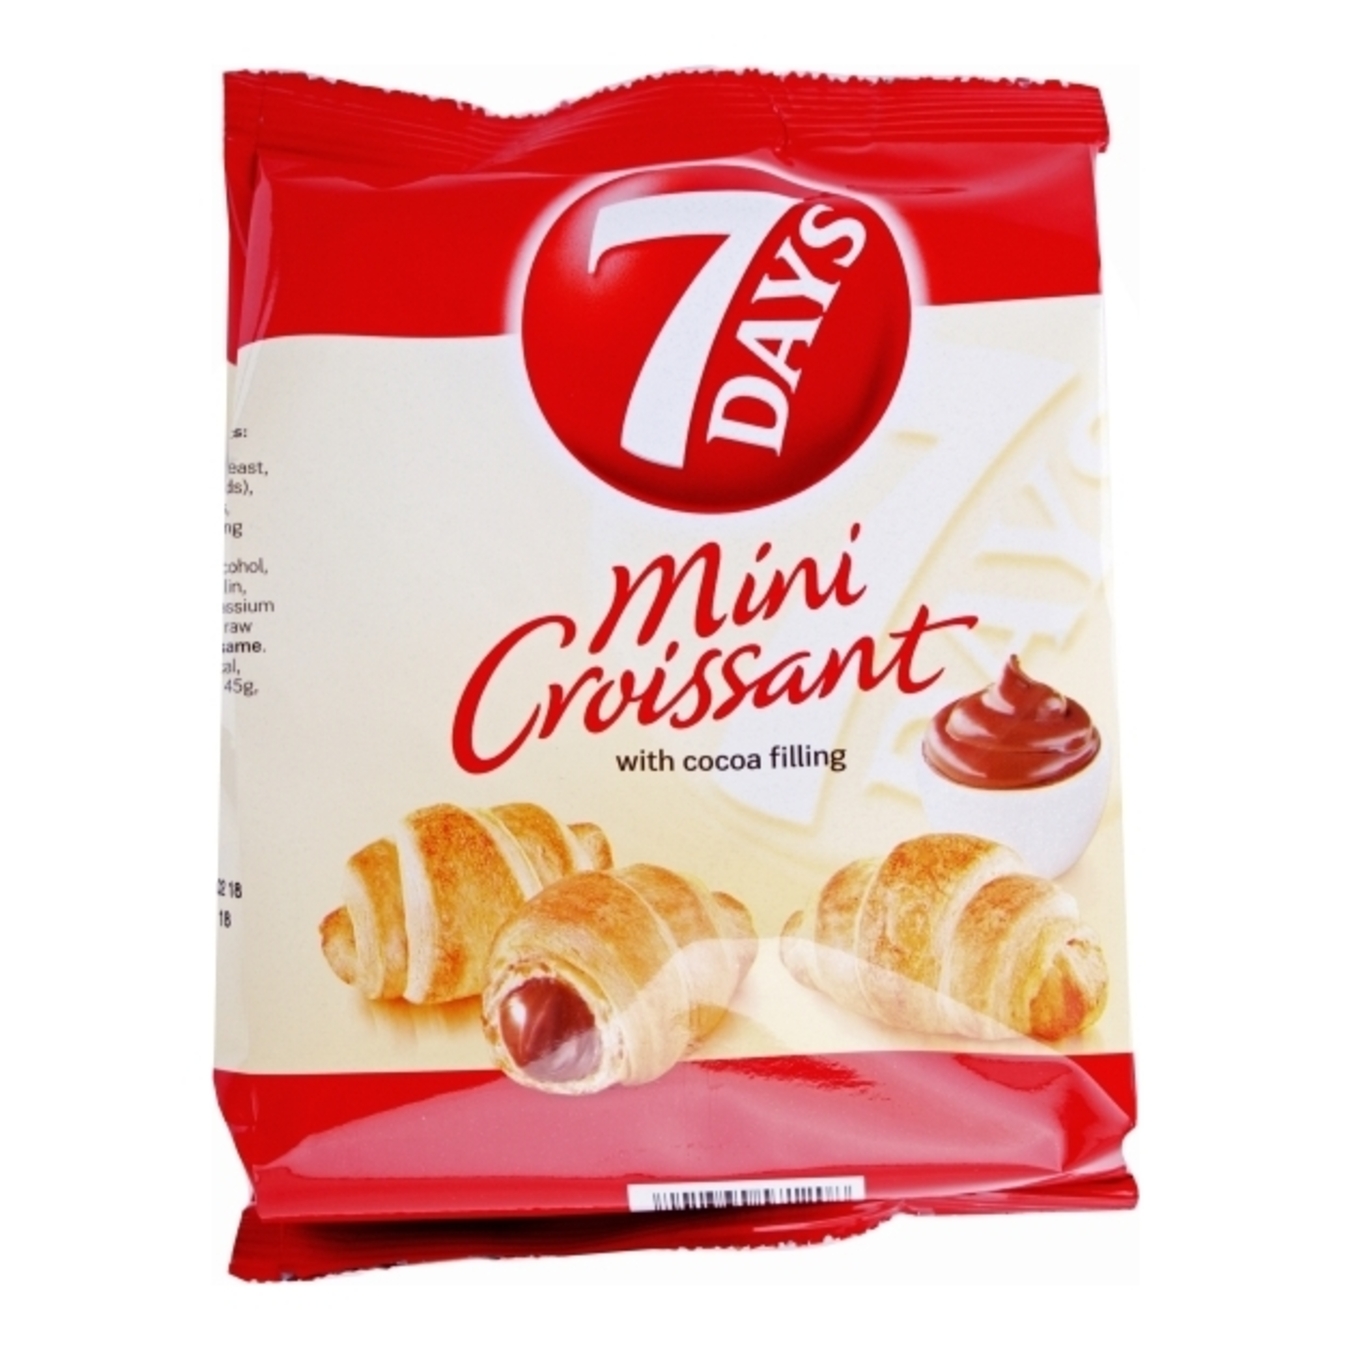 7DAYS Cocoa Cream Mini Croissants
65g